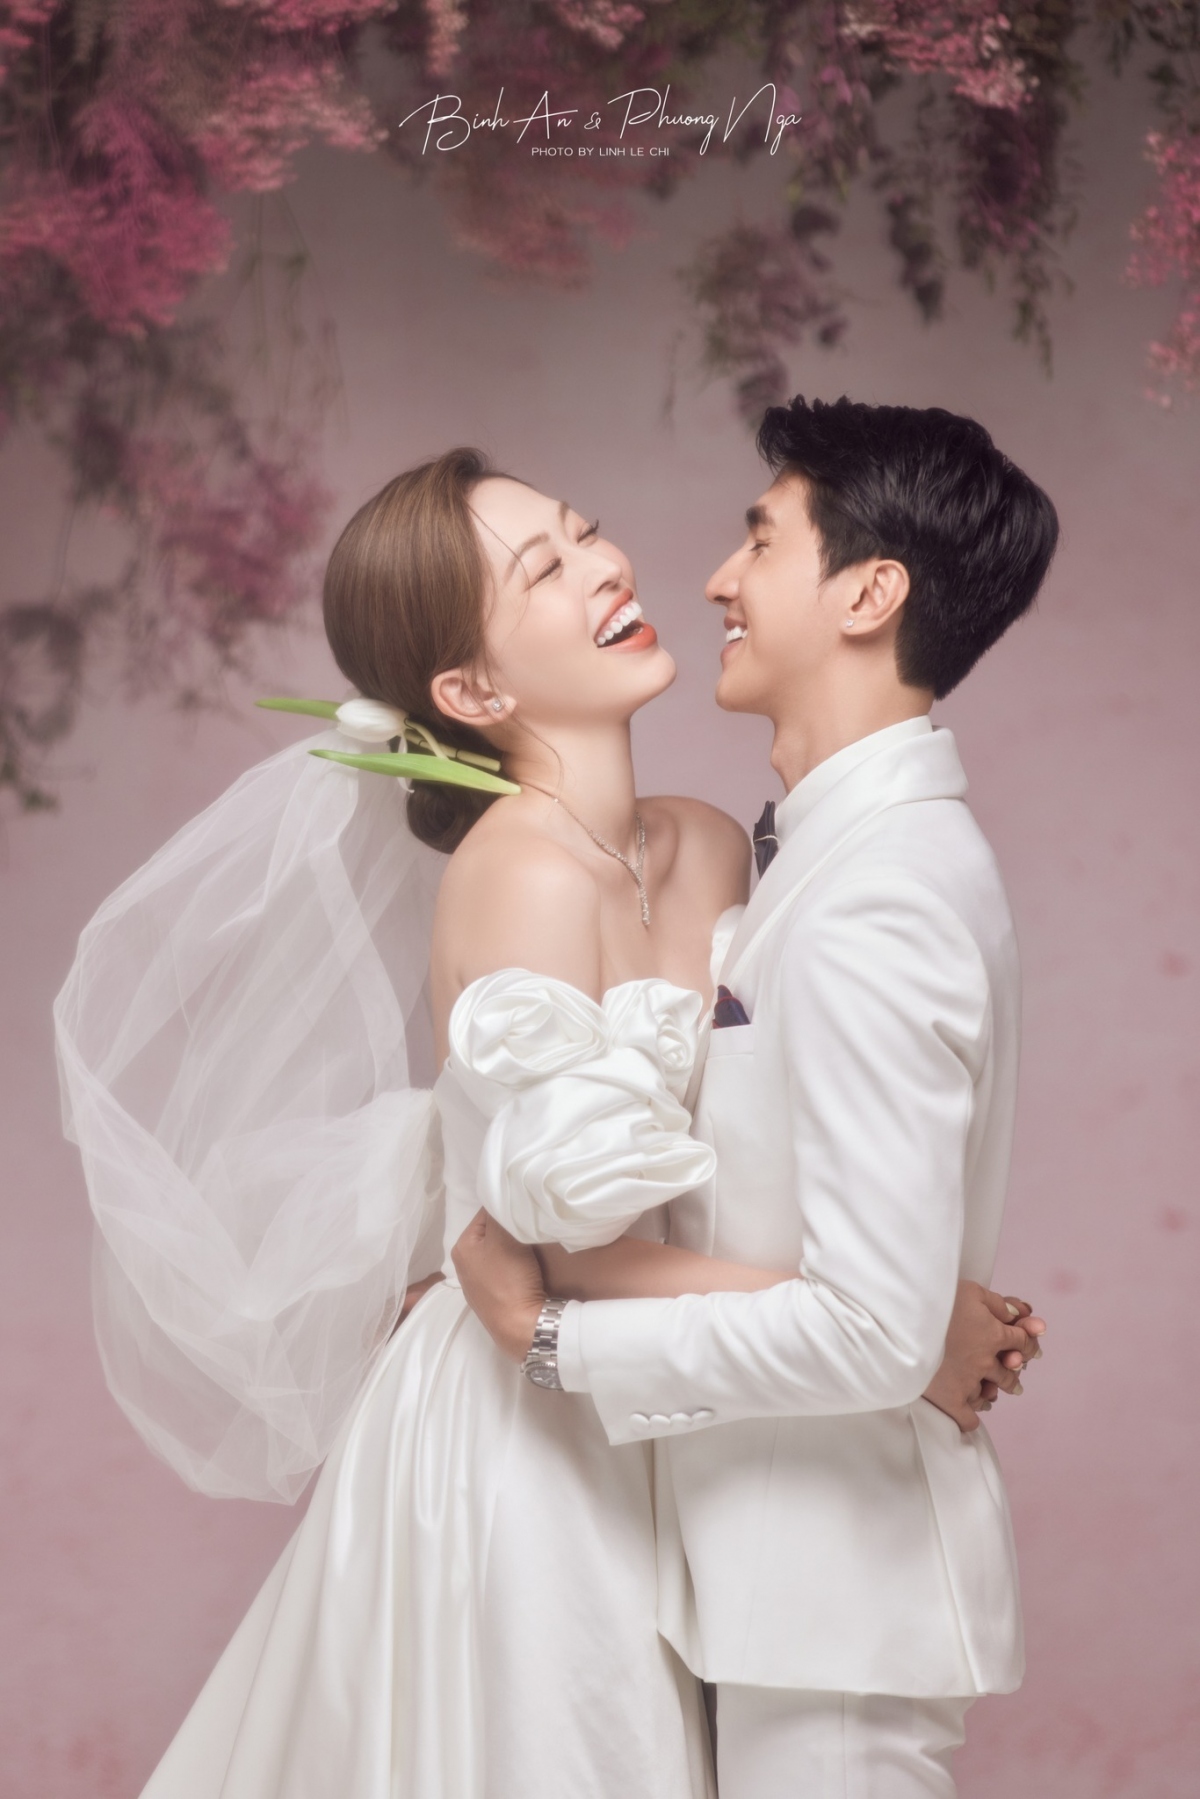 Hãy chiêm ngưỡng những bức ảnh cưới đến từ Hàn Quốc, mang đến vẻ đẹp tuyệt đẹp và nghệ thuật của nó. Với những ánh mắt say đắm, cặp đôi sẽ khiến bạn phải trầm trồ ngưỡng mộ. Hãy để những bức ảnh này khơi gợi niềm đam mê và cảm hứng trong trái tim của bạn.